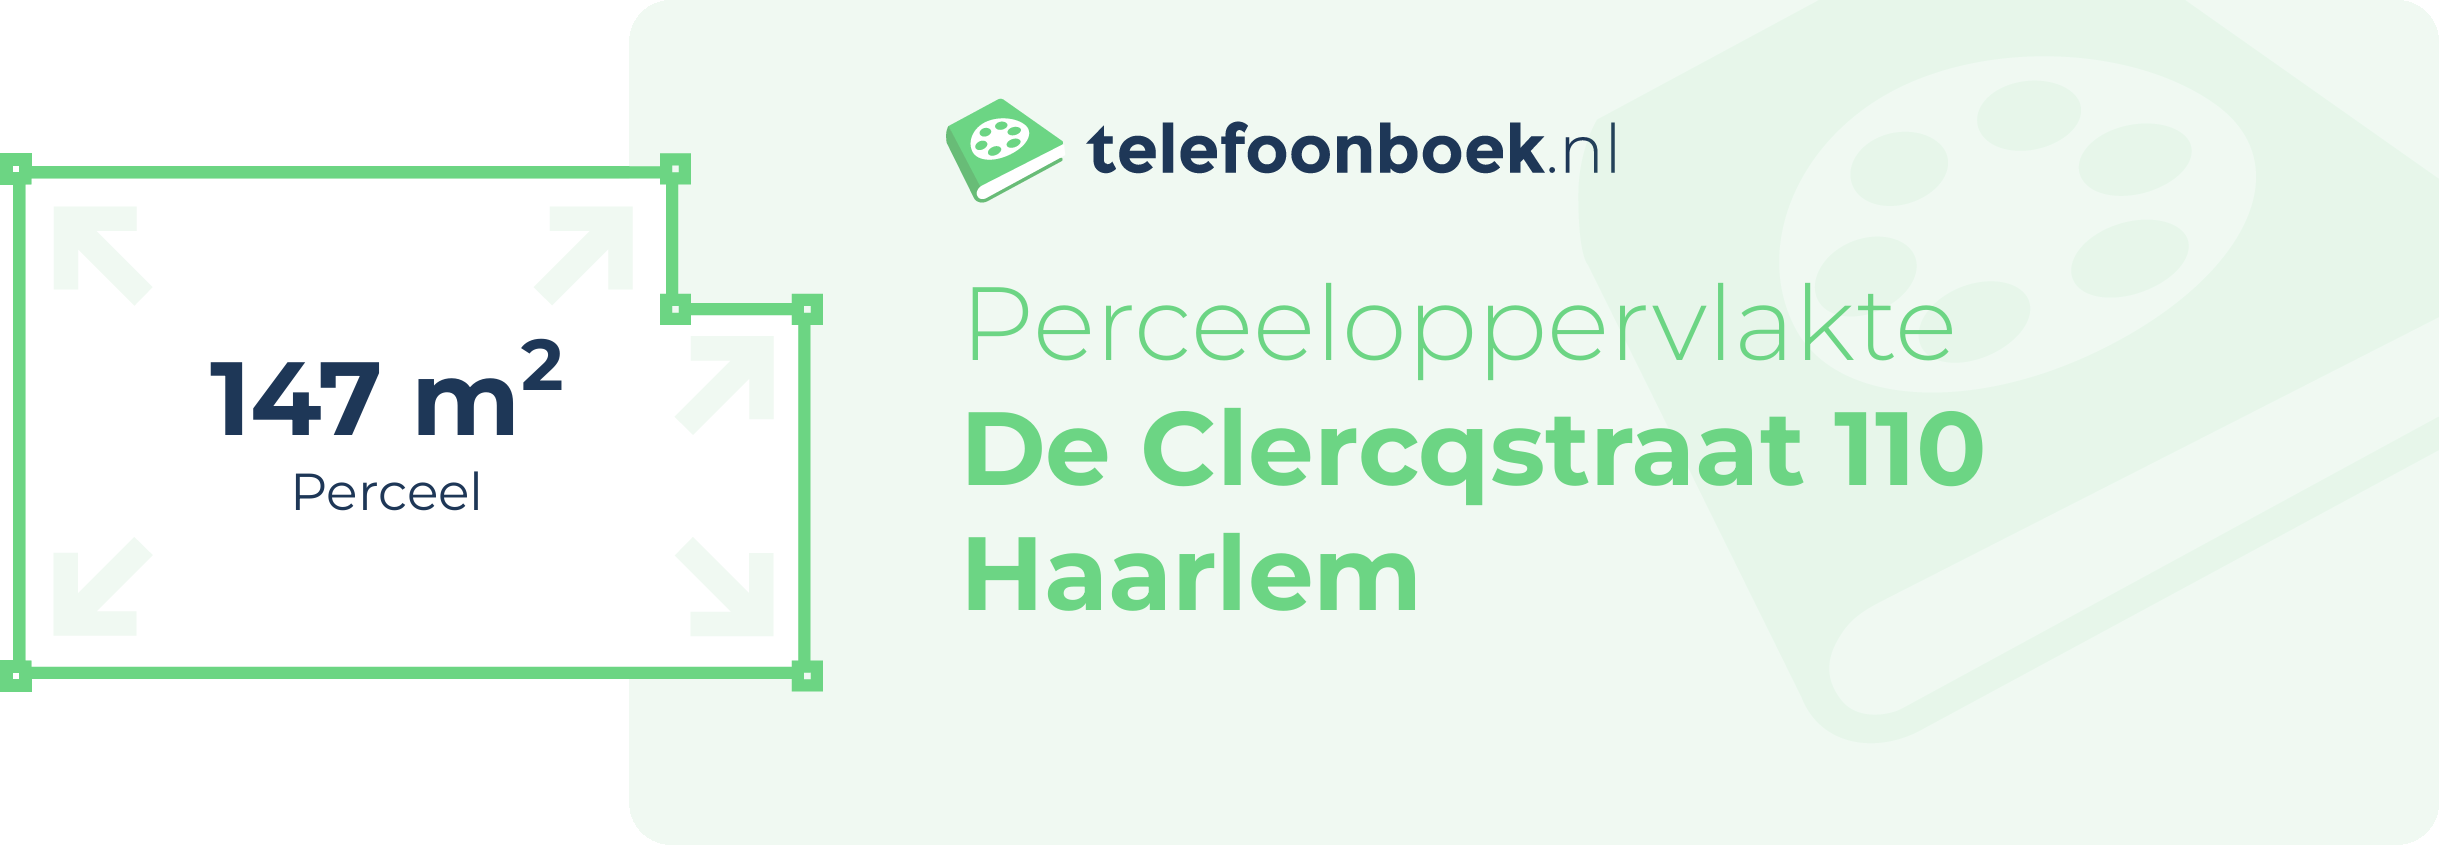 Perceeloppervlakte De Clercqstraat 110 Haarlem